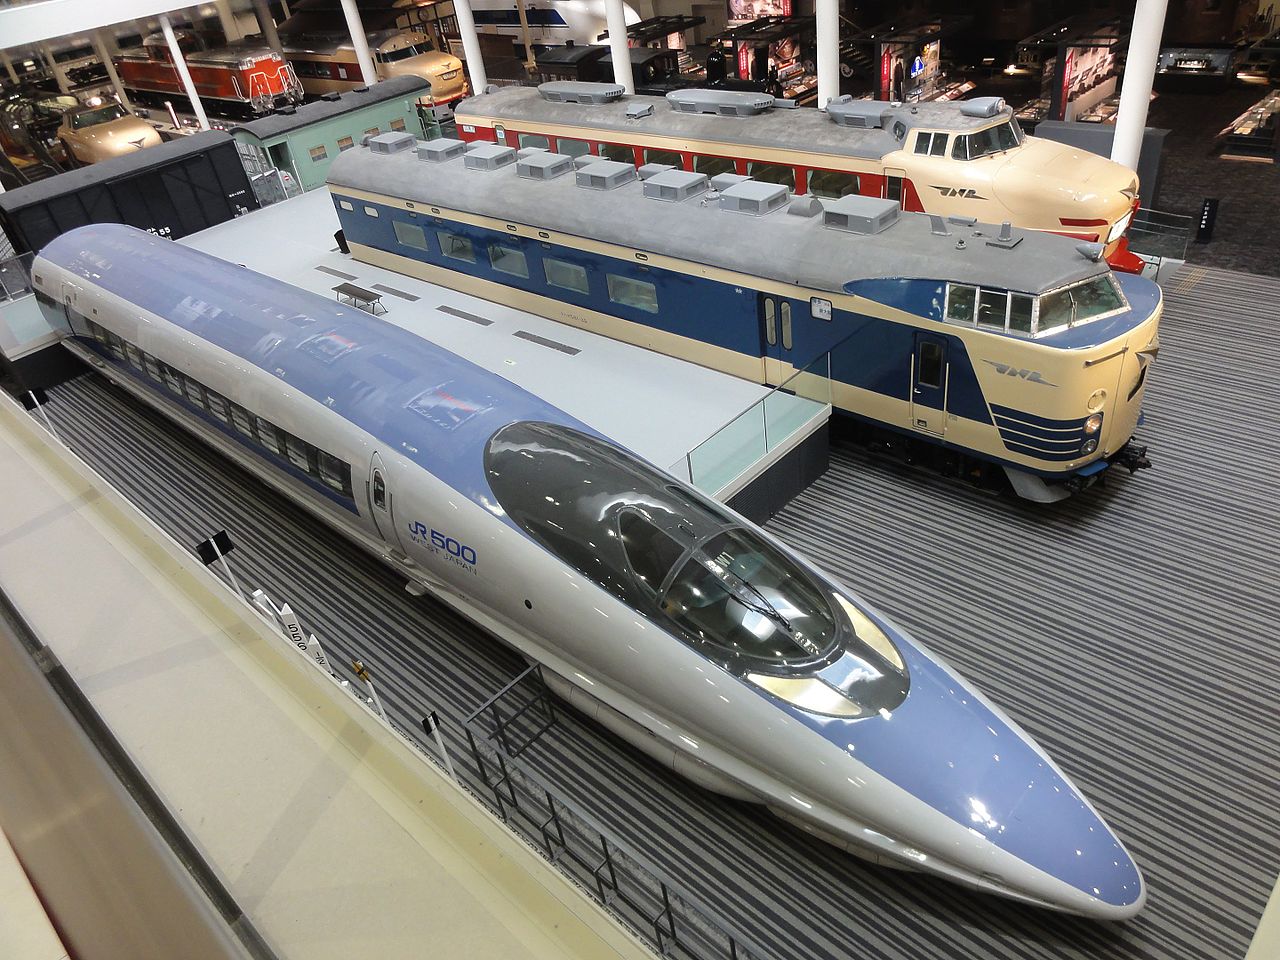 Železniční muzeum v Kjótu. By Rsa - Own work, CC BY-SA 3.0, https://commons.wikimedia.org/w/index.php?curid=48640338